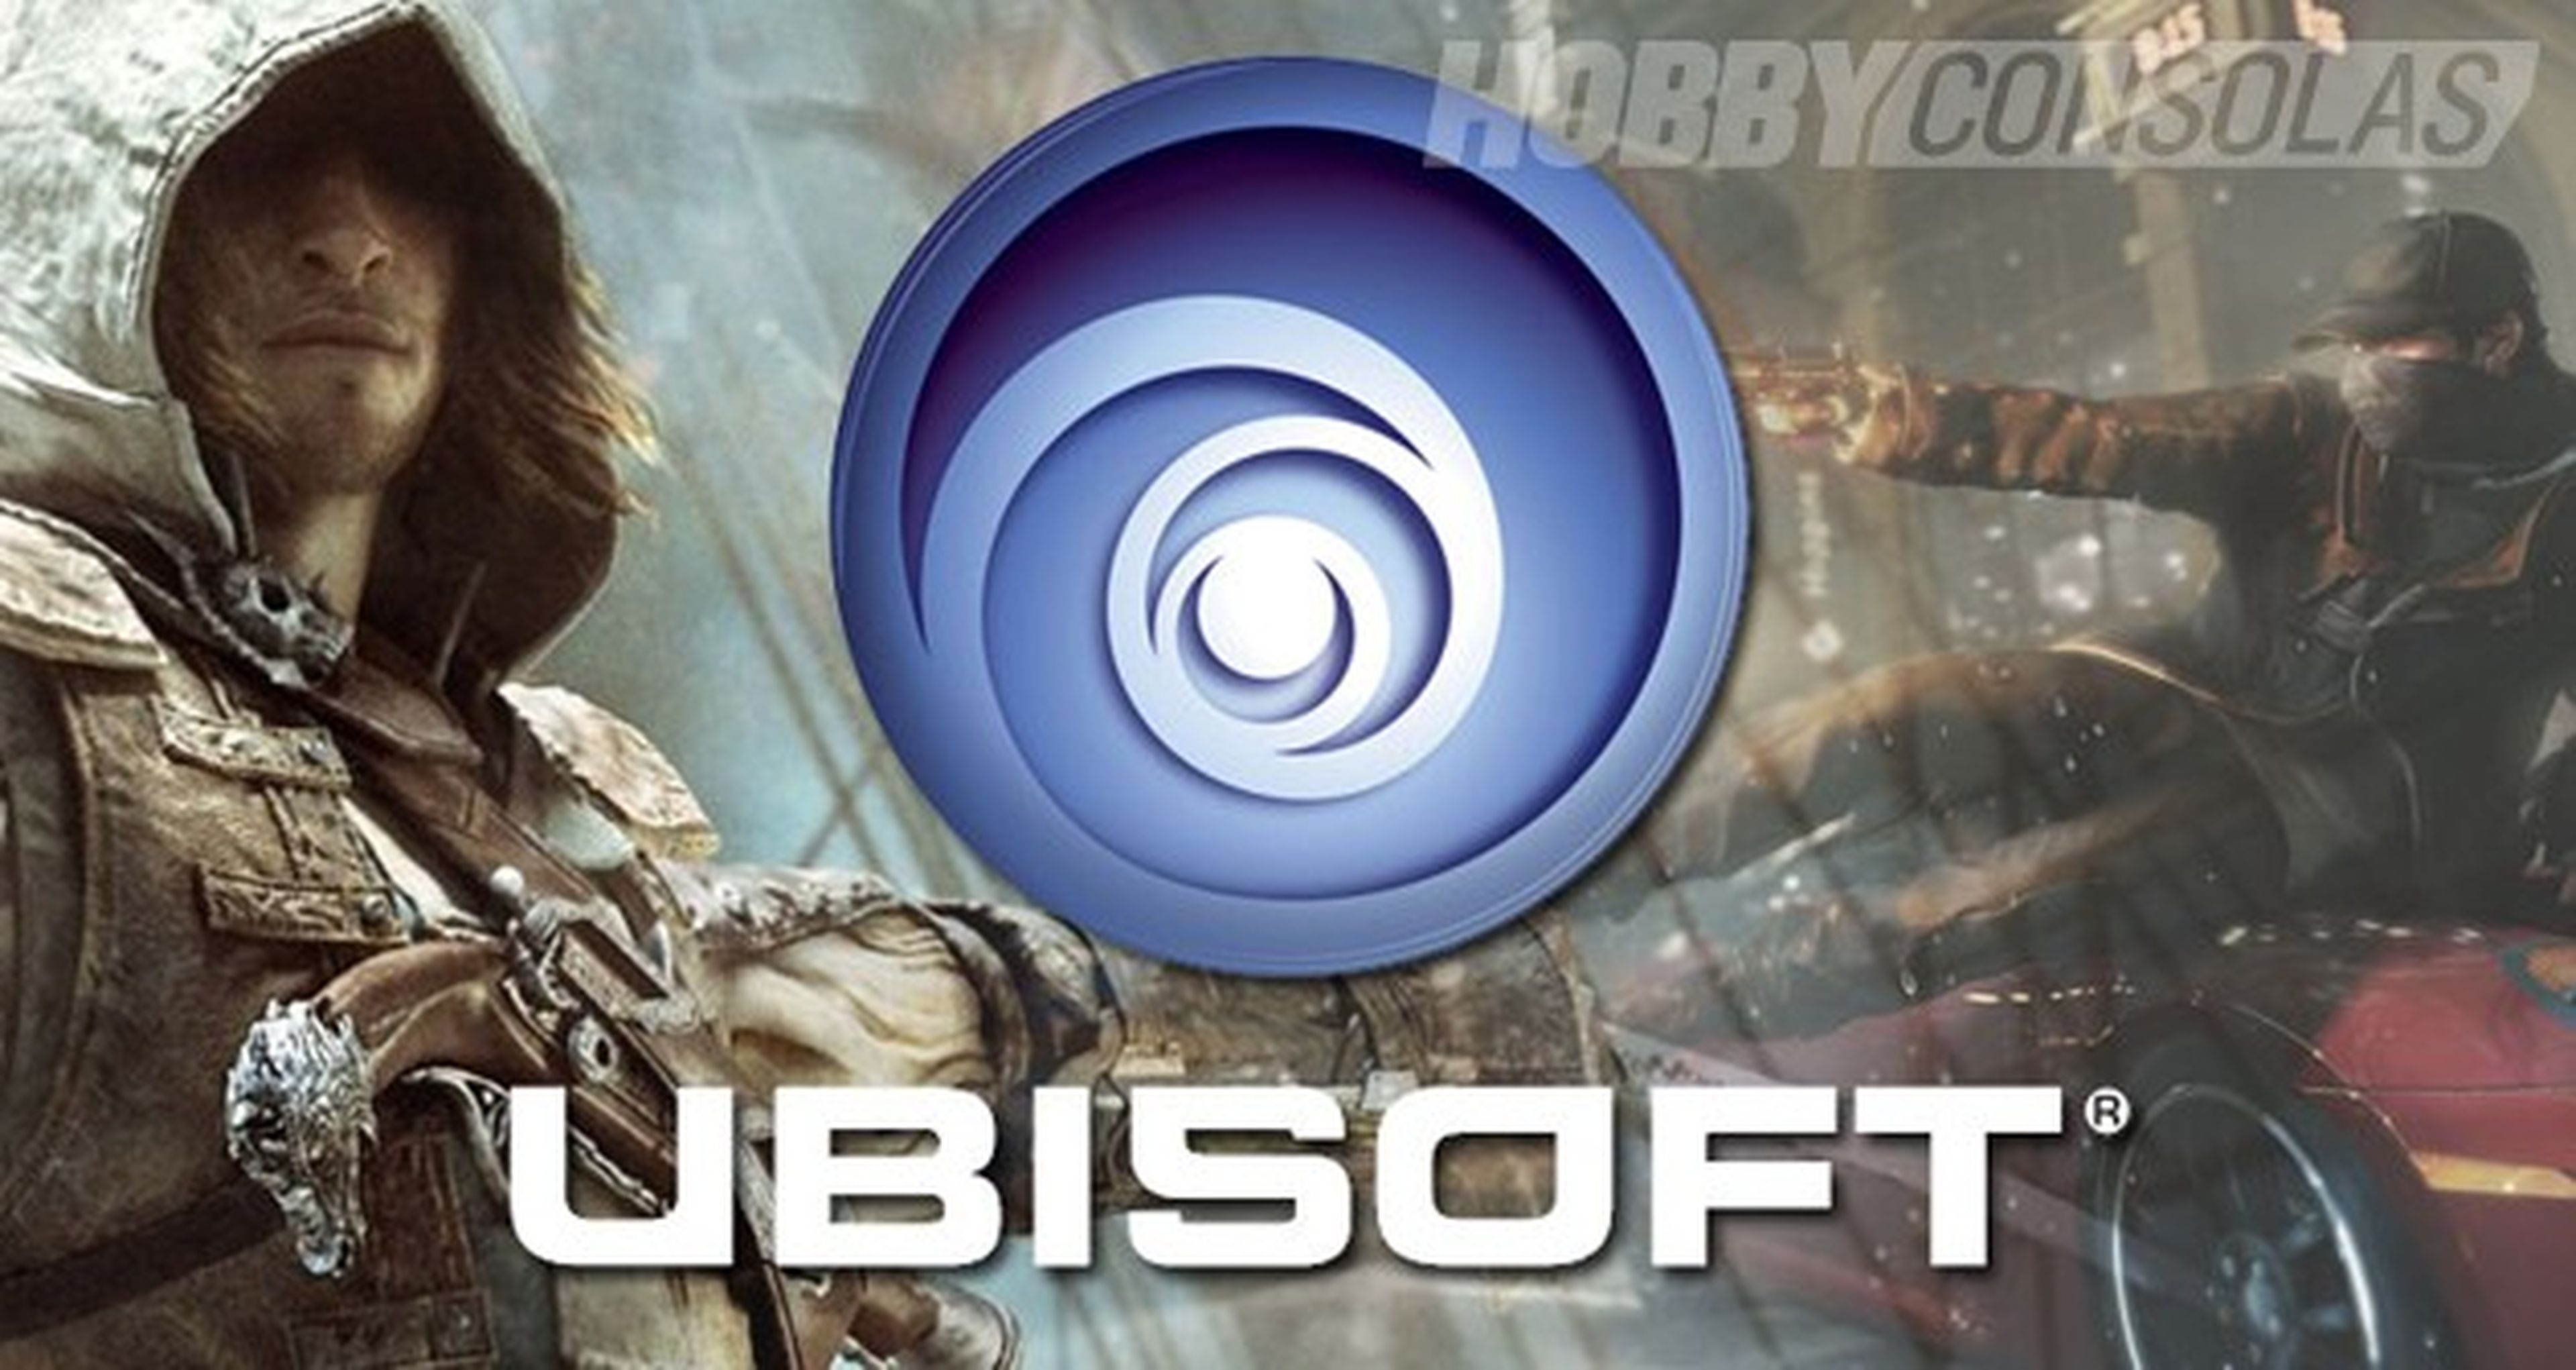 Assassin's Creed es la franquicia más vendida de Ubisoft